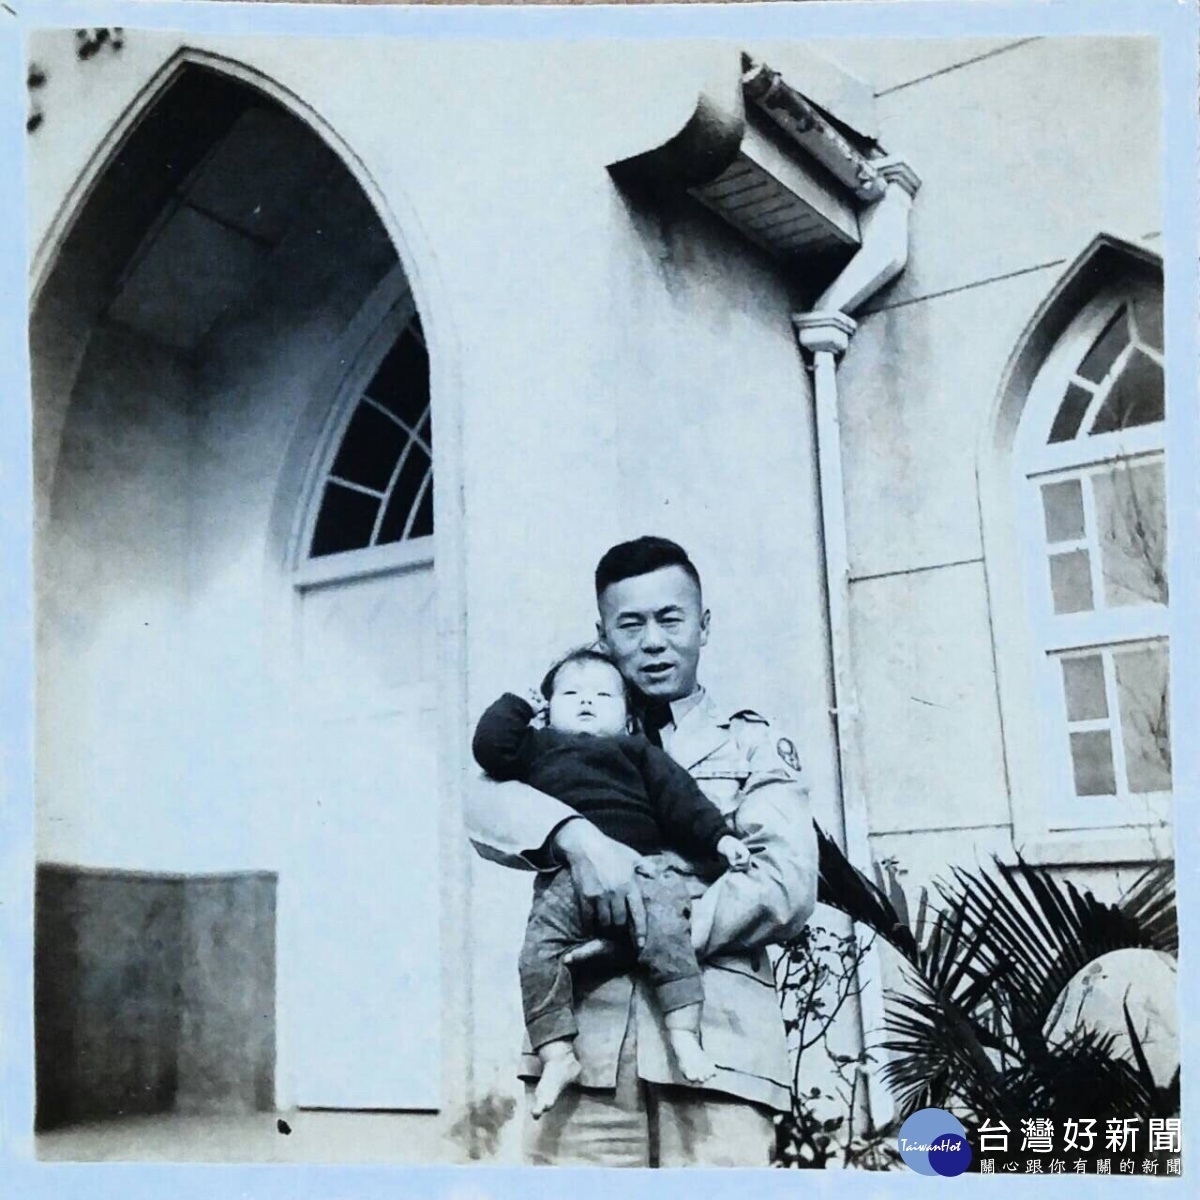 魯明哲議員孩提時和父親魯鳳三合照